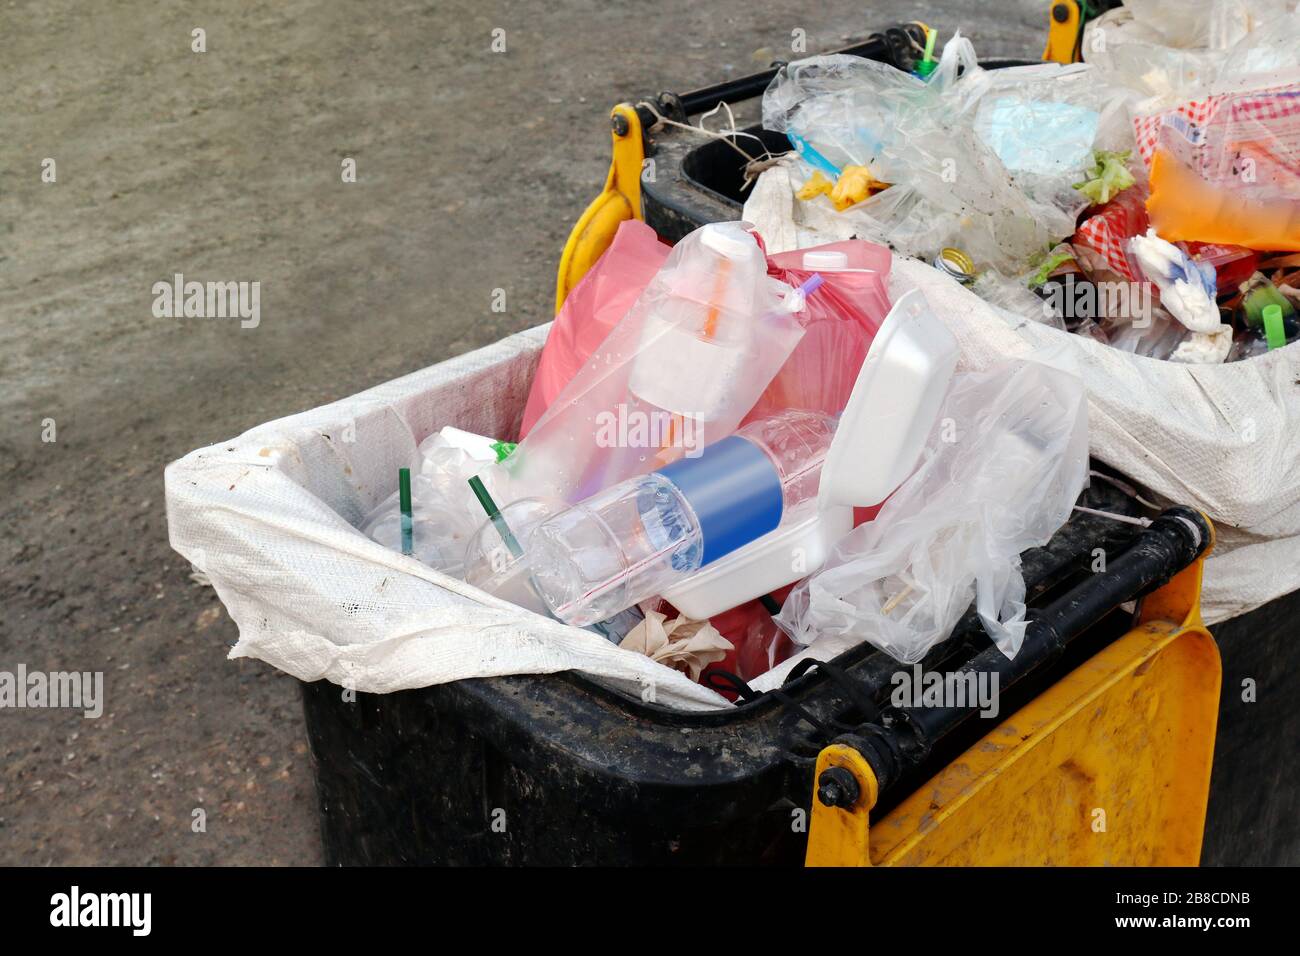 déchets de poubelles, déchets déchets déchets plastiques déchets, poubelles pleines déchets sacs plastiques se refermer, pollution déchets plastiques déchets, déchets déchets déchets plastiques tas de sacs en plastique Banque D'Images